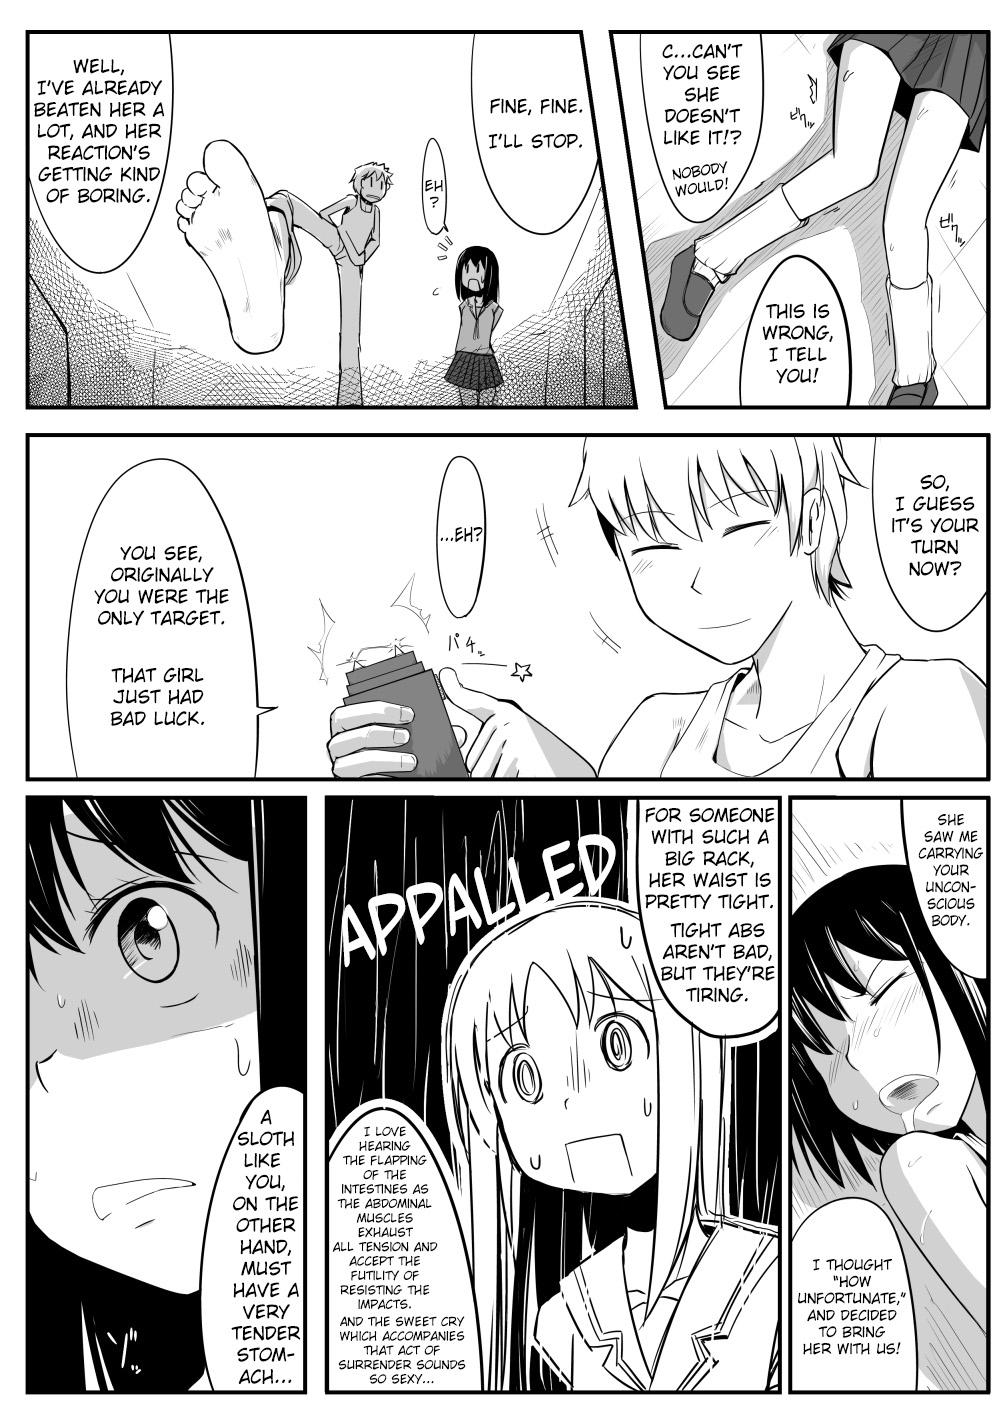 Mamadas Manga About Viciously Beating Osaka’s Stomach - Azumanga daioh Masturbation - Page 5